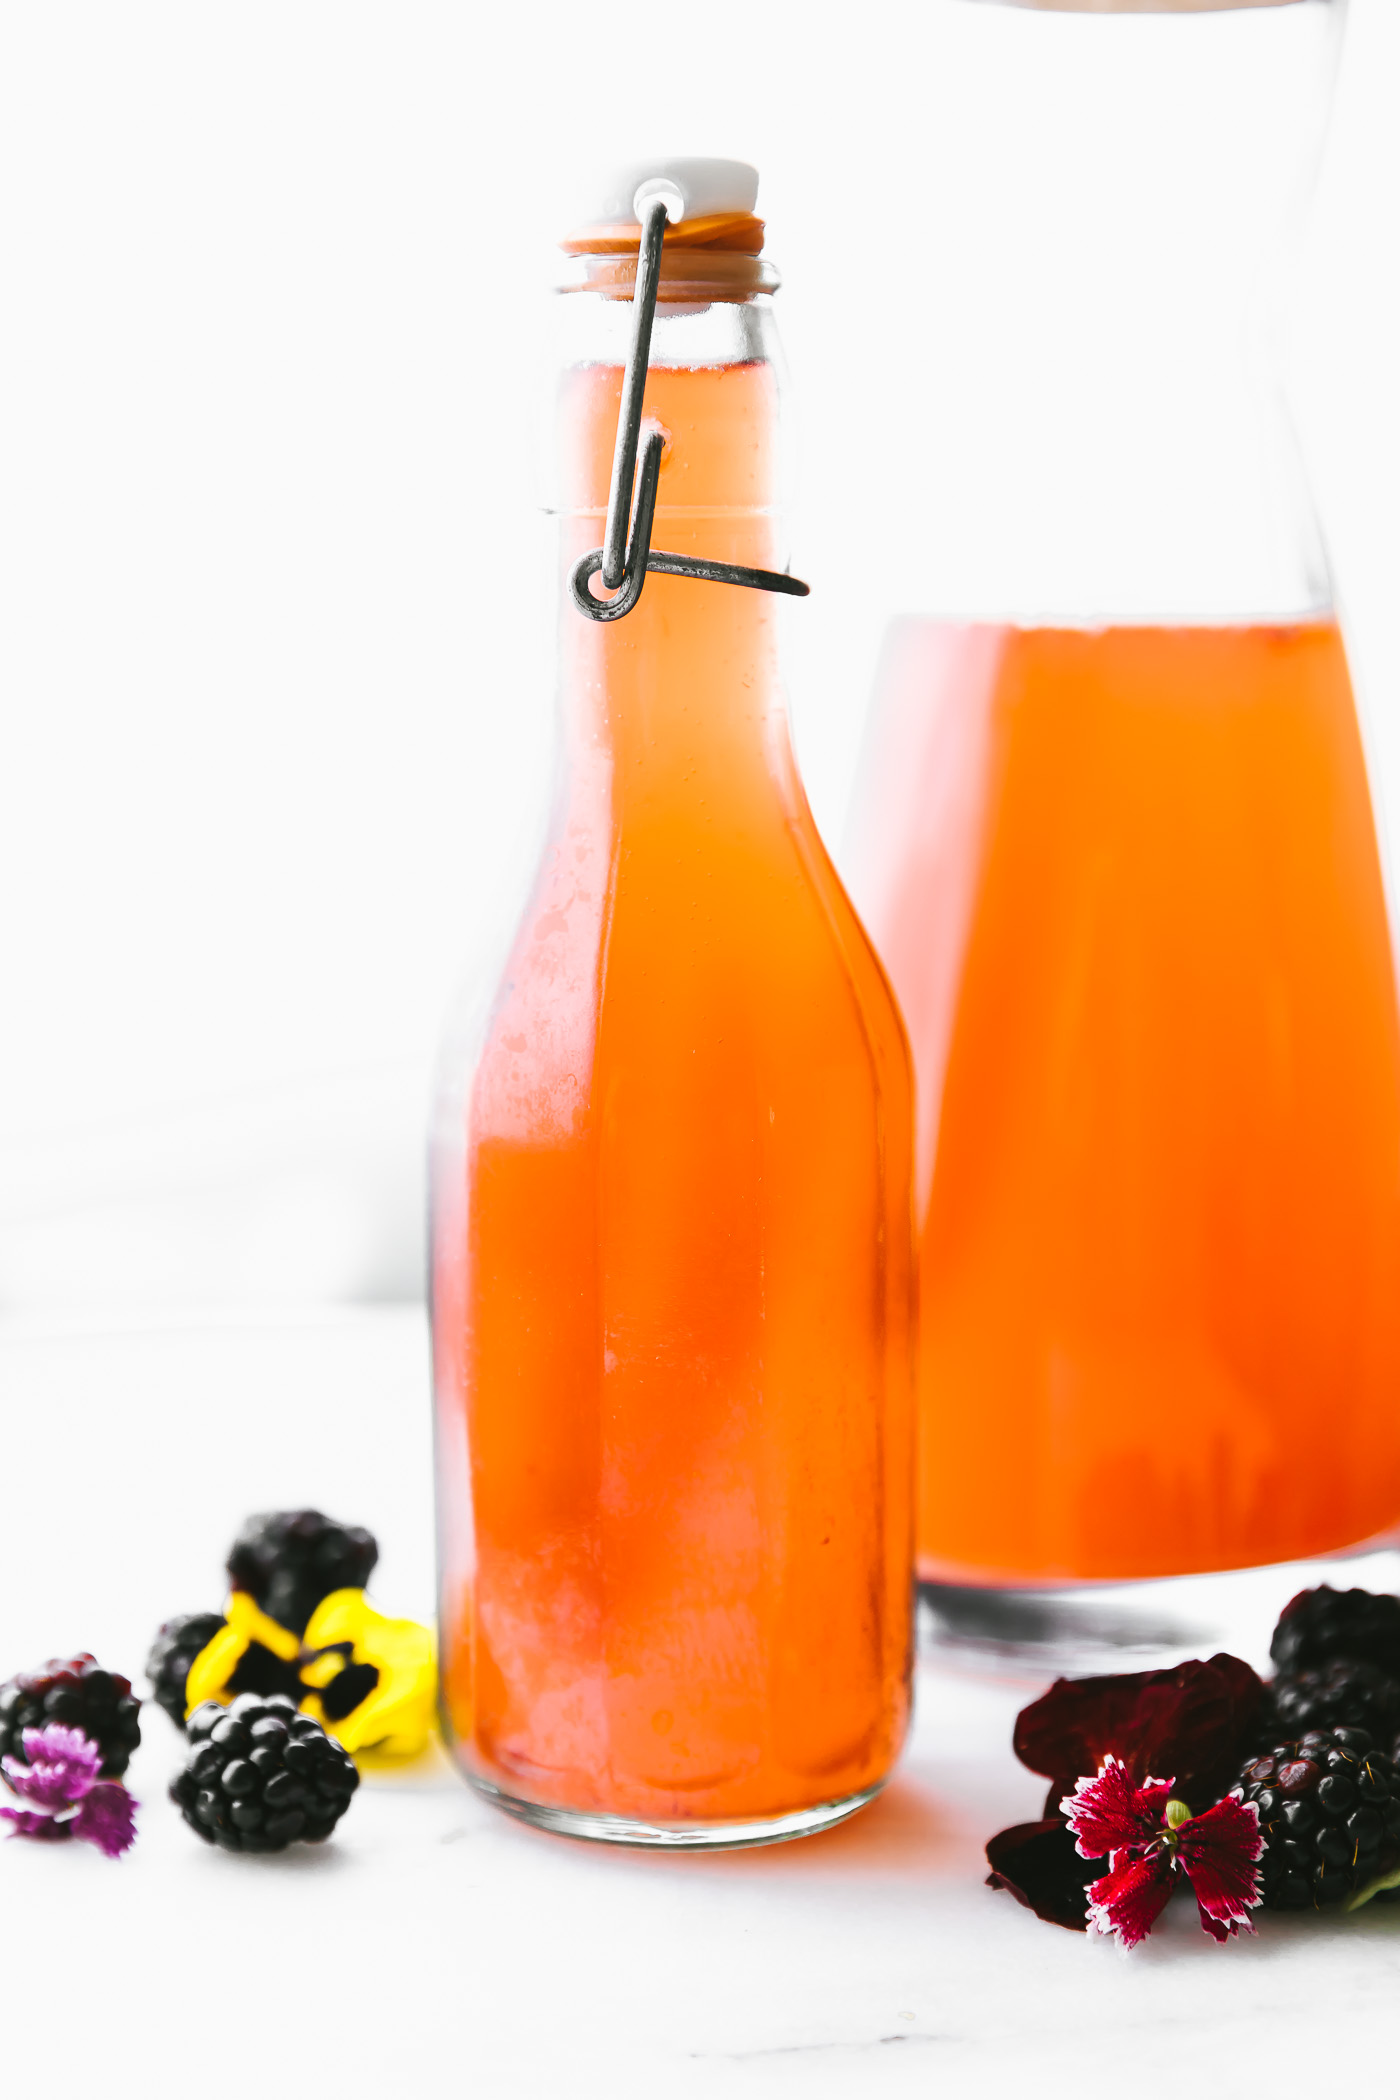 homemade Fruit kvass in glass decanter with fresh blackberries around bottles.